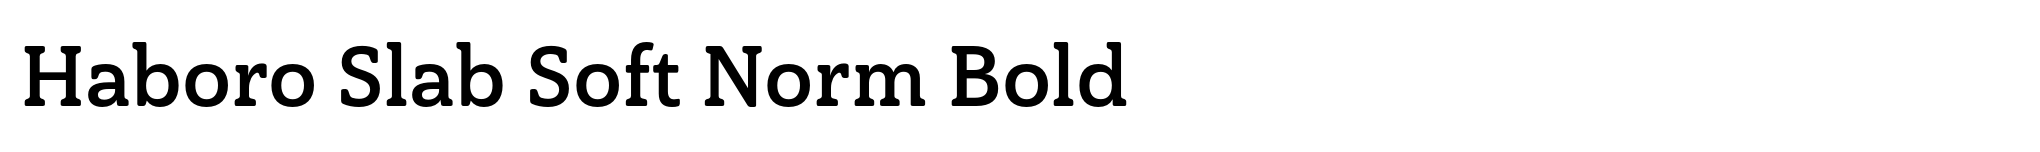 Haboro Slab Soft Norm Bold image